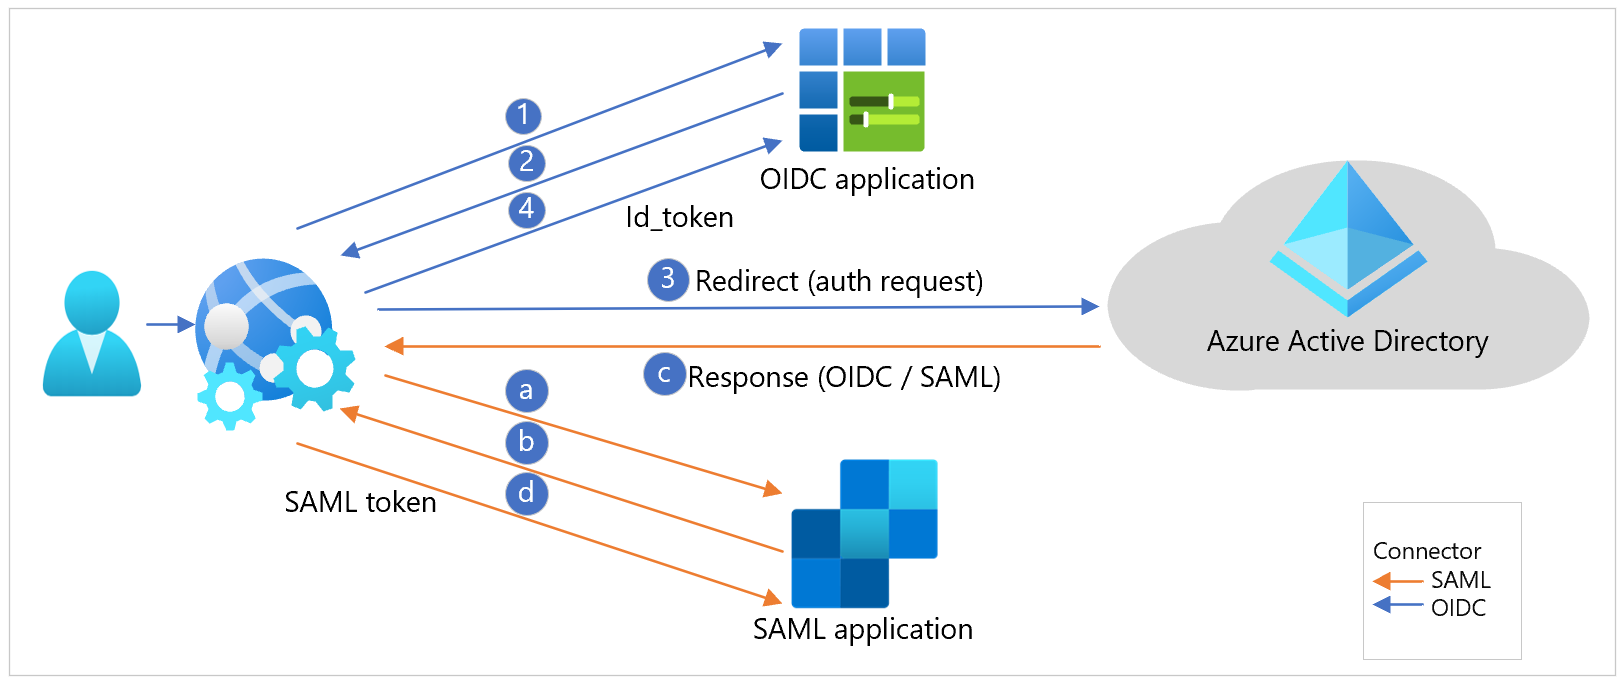 Diagrama dos fluxos de trabalho da aplicação OIDC e SAML.